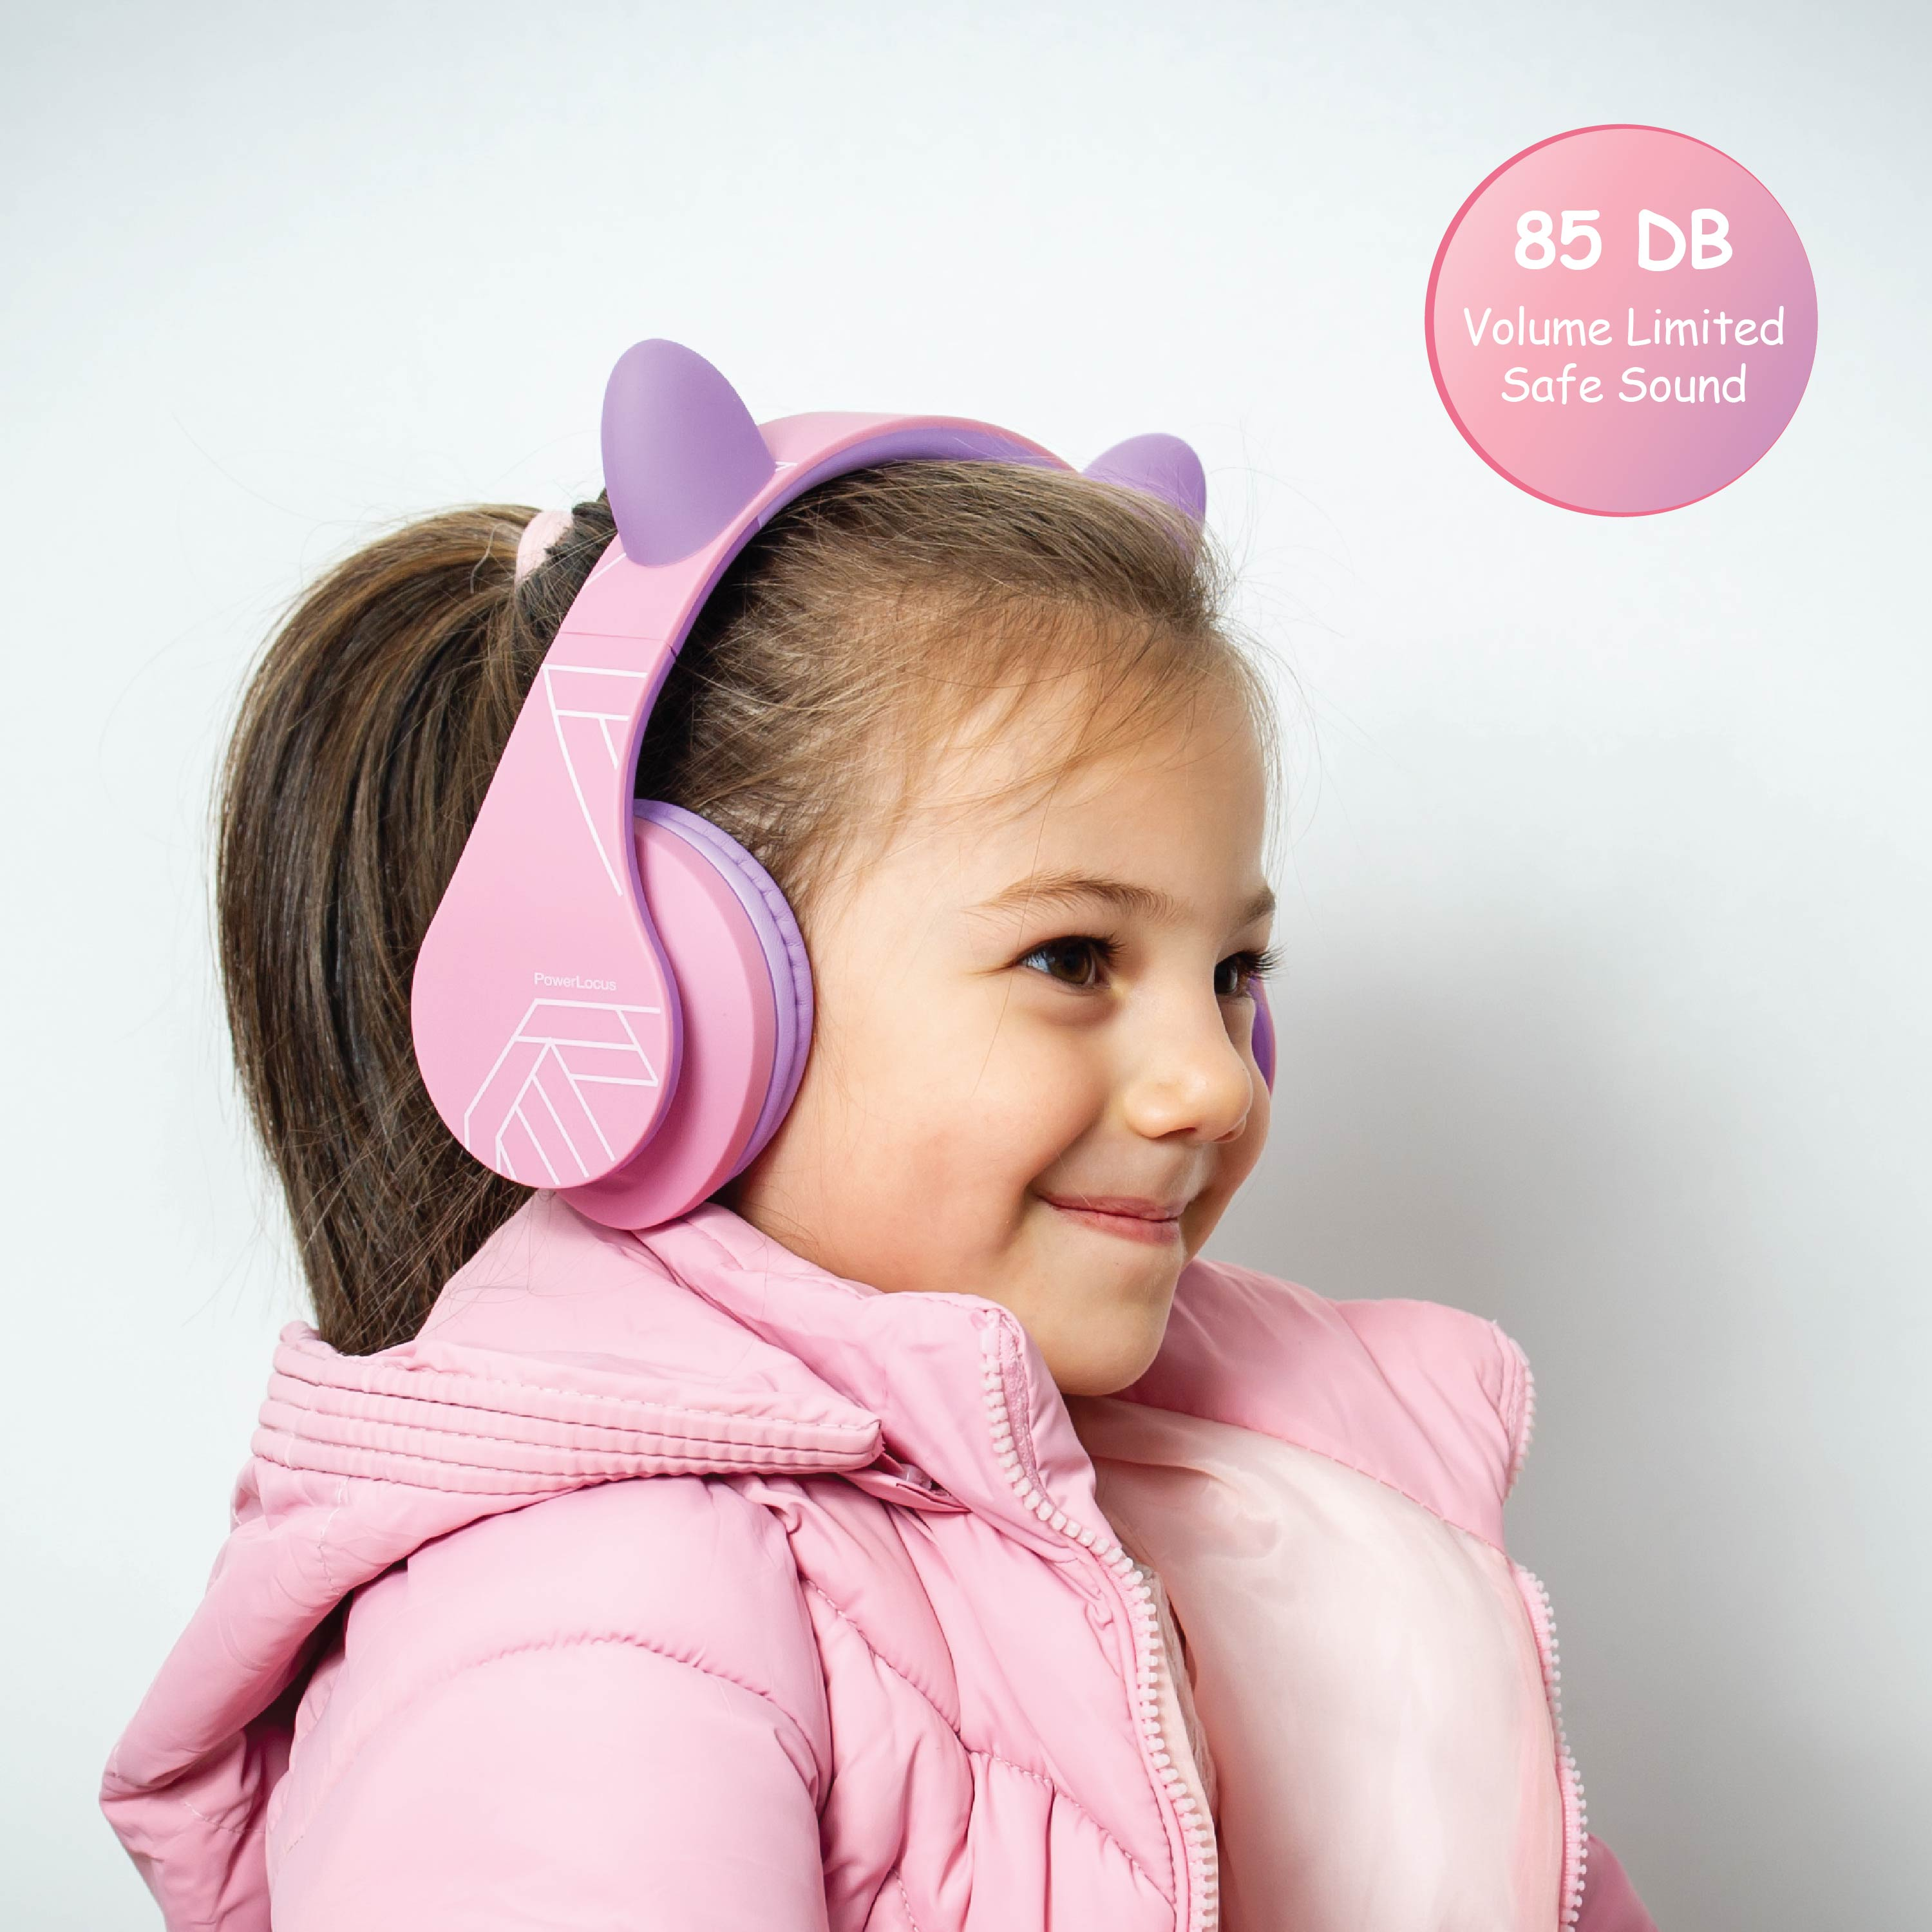 POWERLOCUS P2 Over-ear Kopfhörer für Kinder, Lila Bluetooth